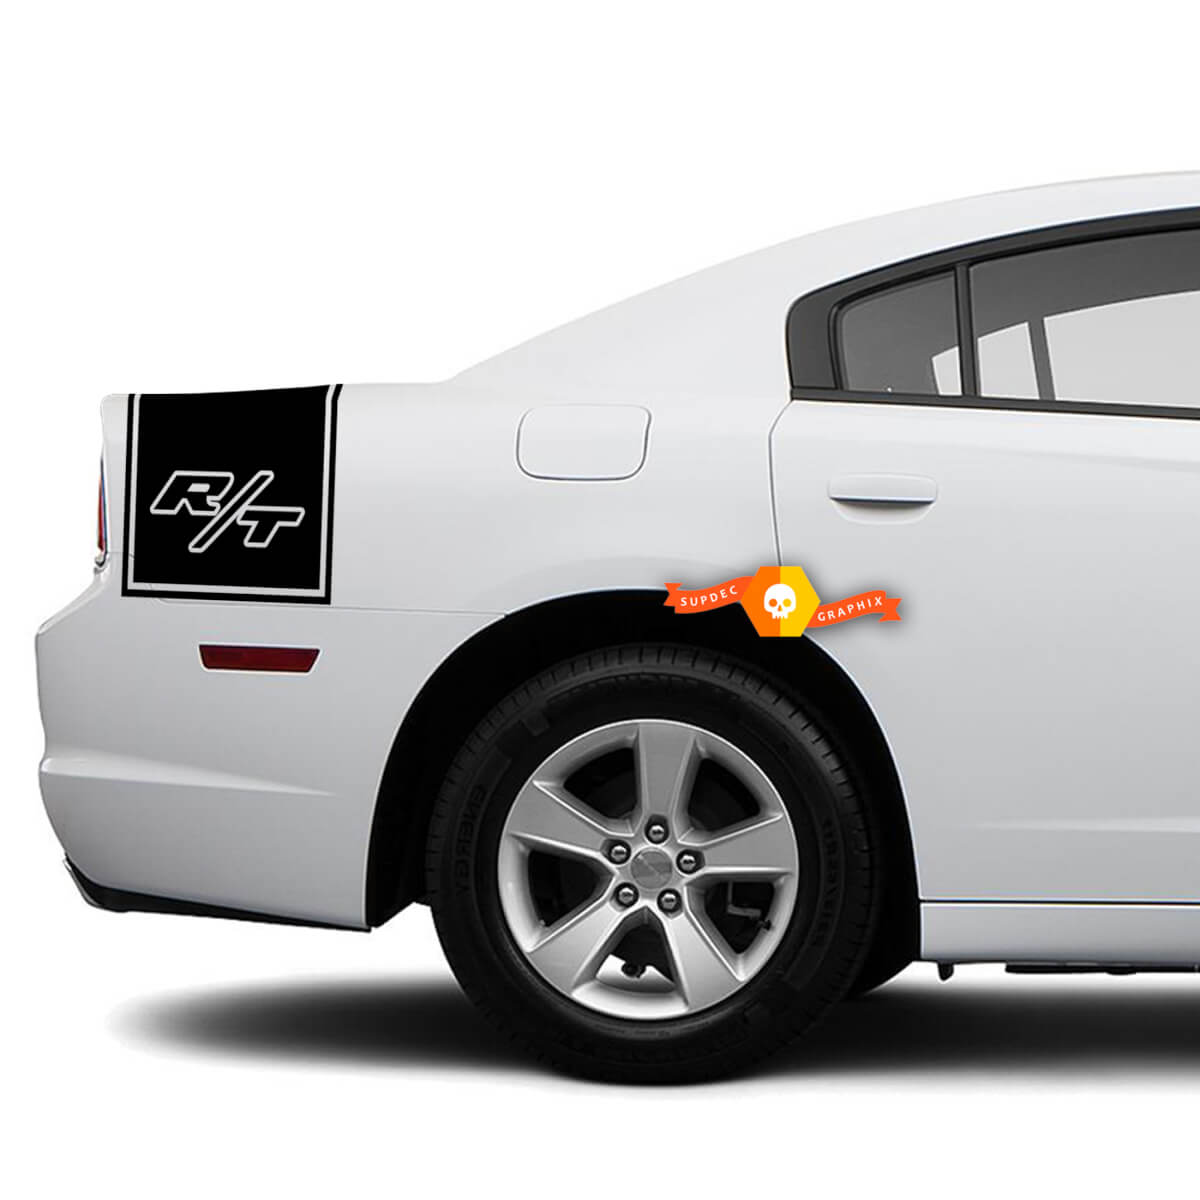 Dodge Charger Rückseite Band Aufkleber Aufkleber R/T Grafiken passend für Modelle 2011-2014
